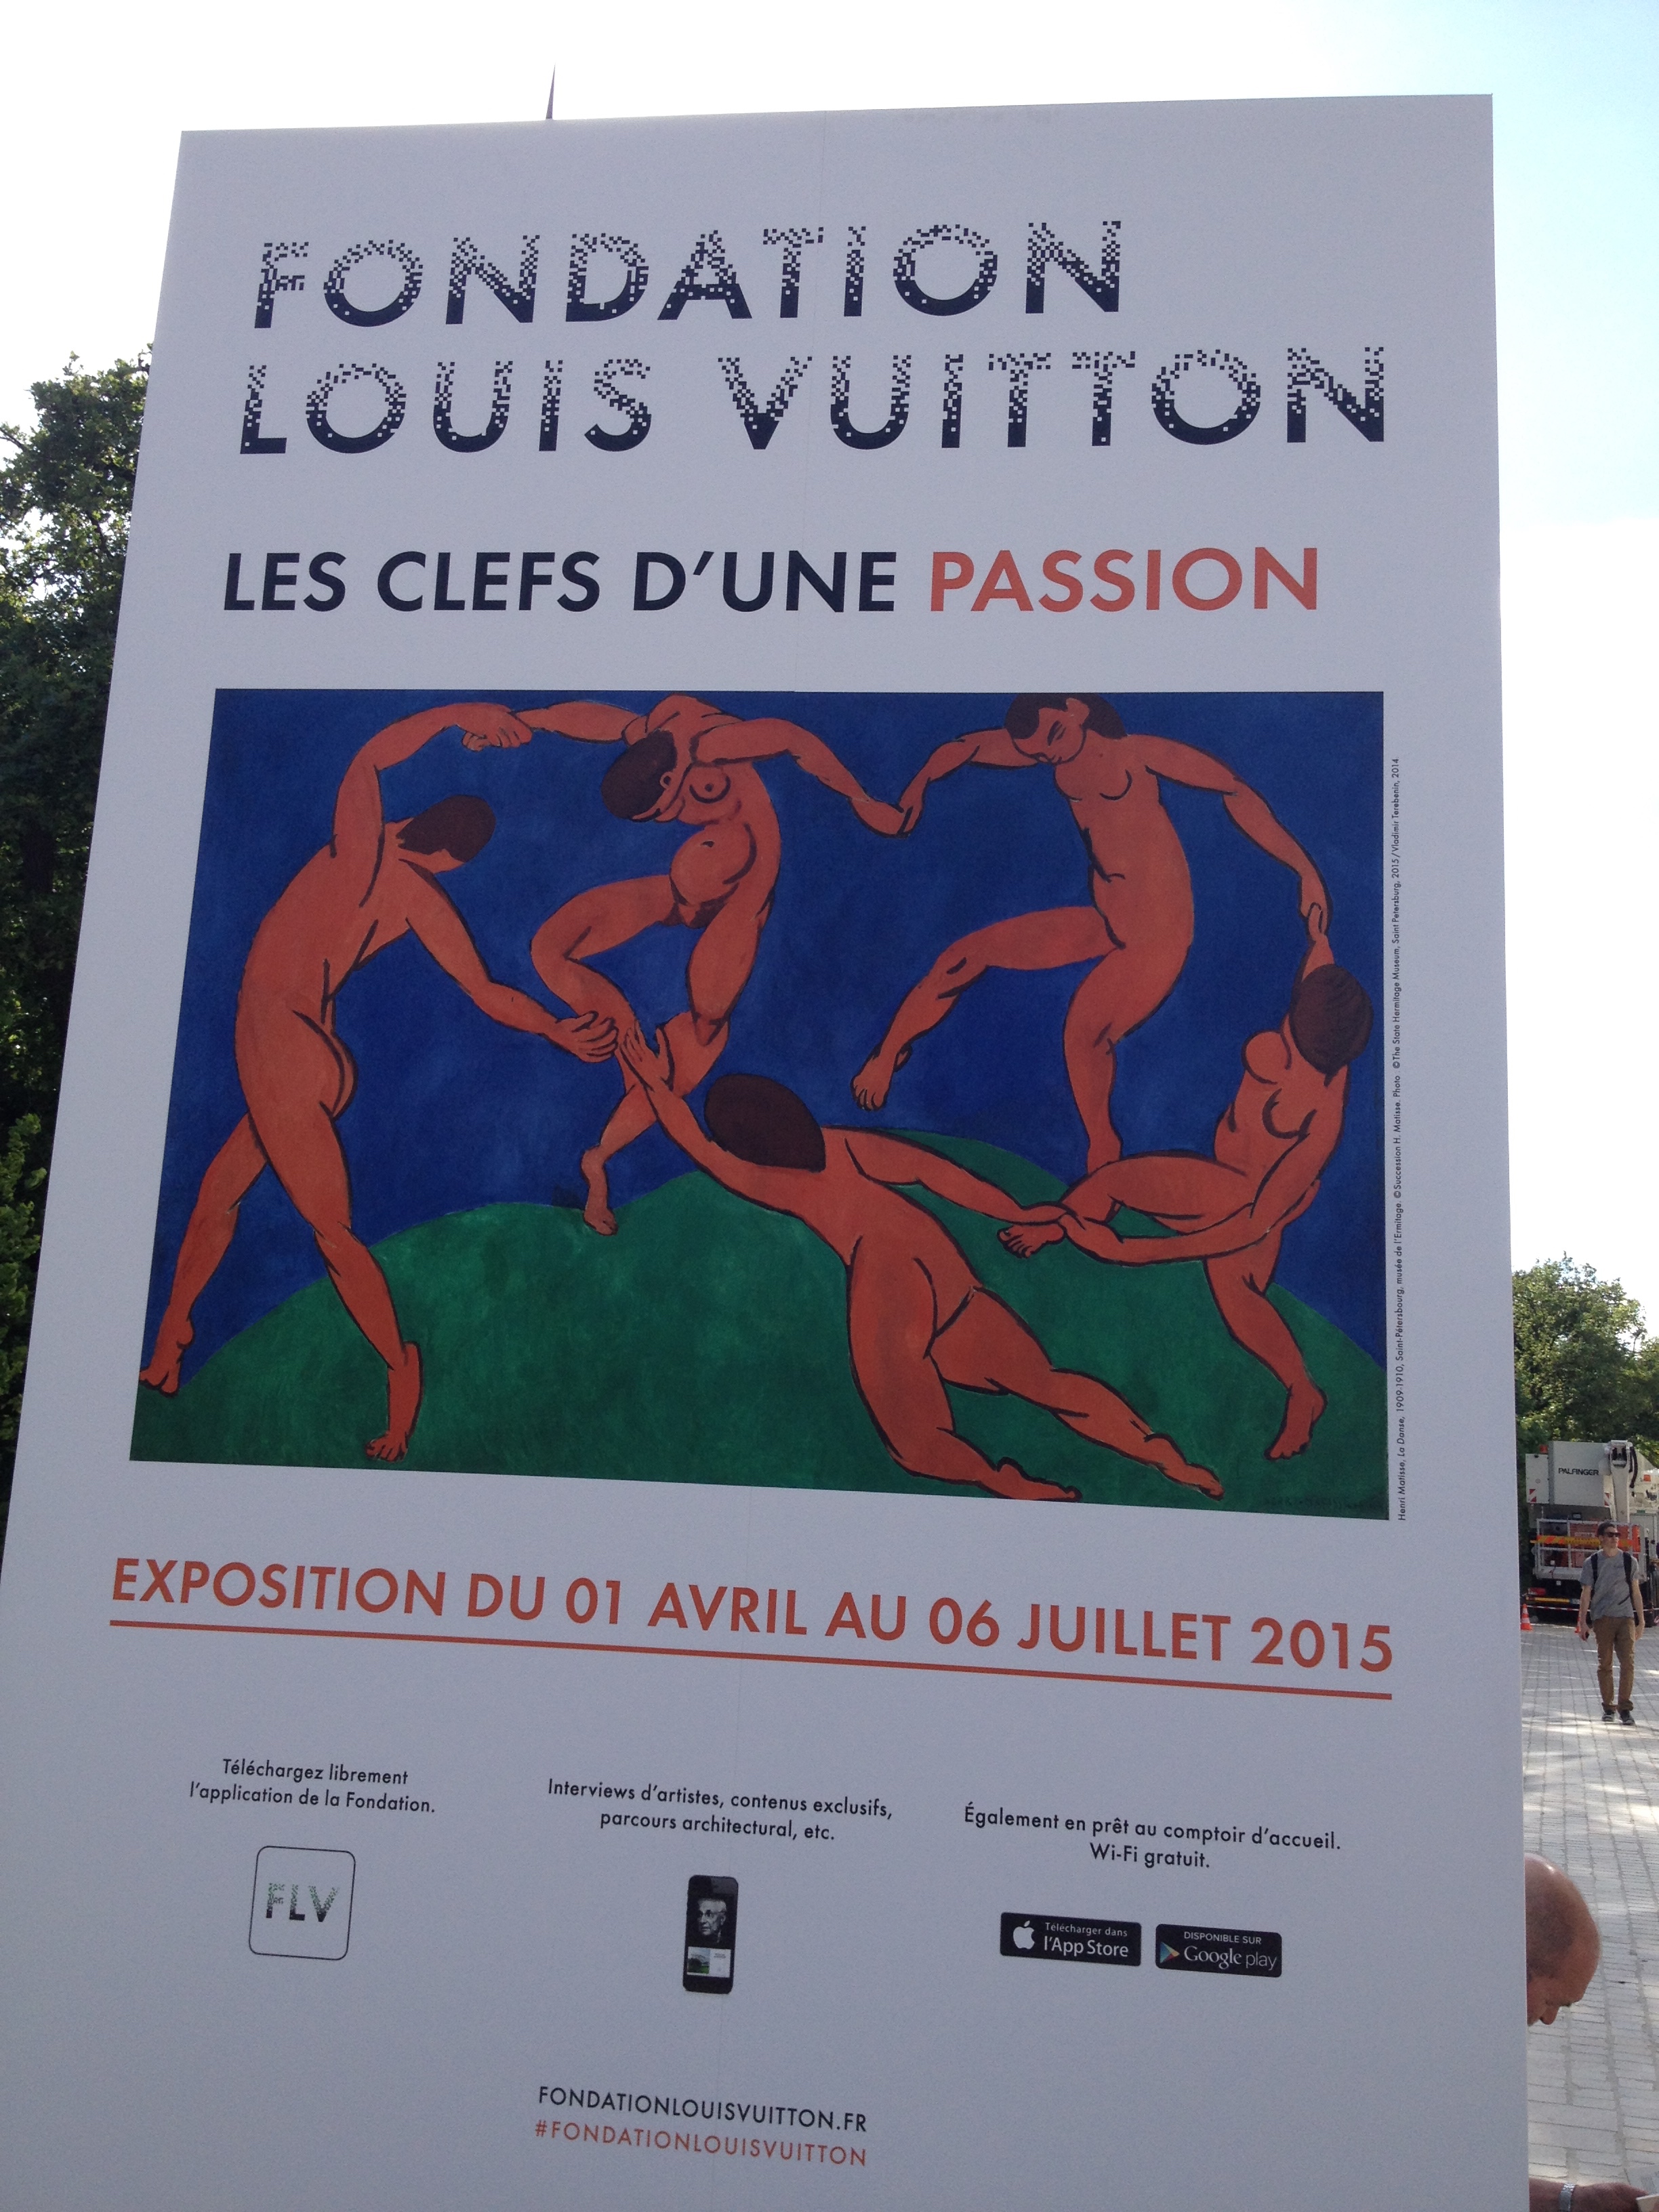 Les clefs d’une passion – Fondation Louis Vuitton | MHF le blog